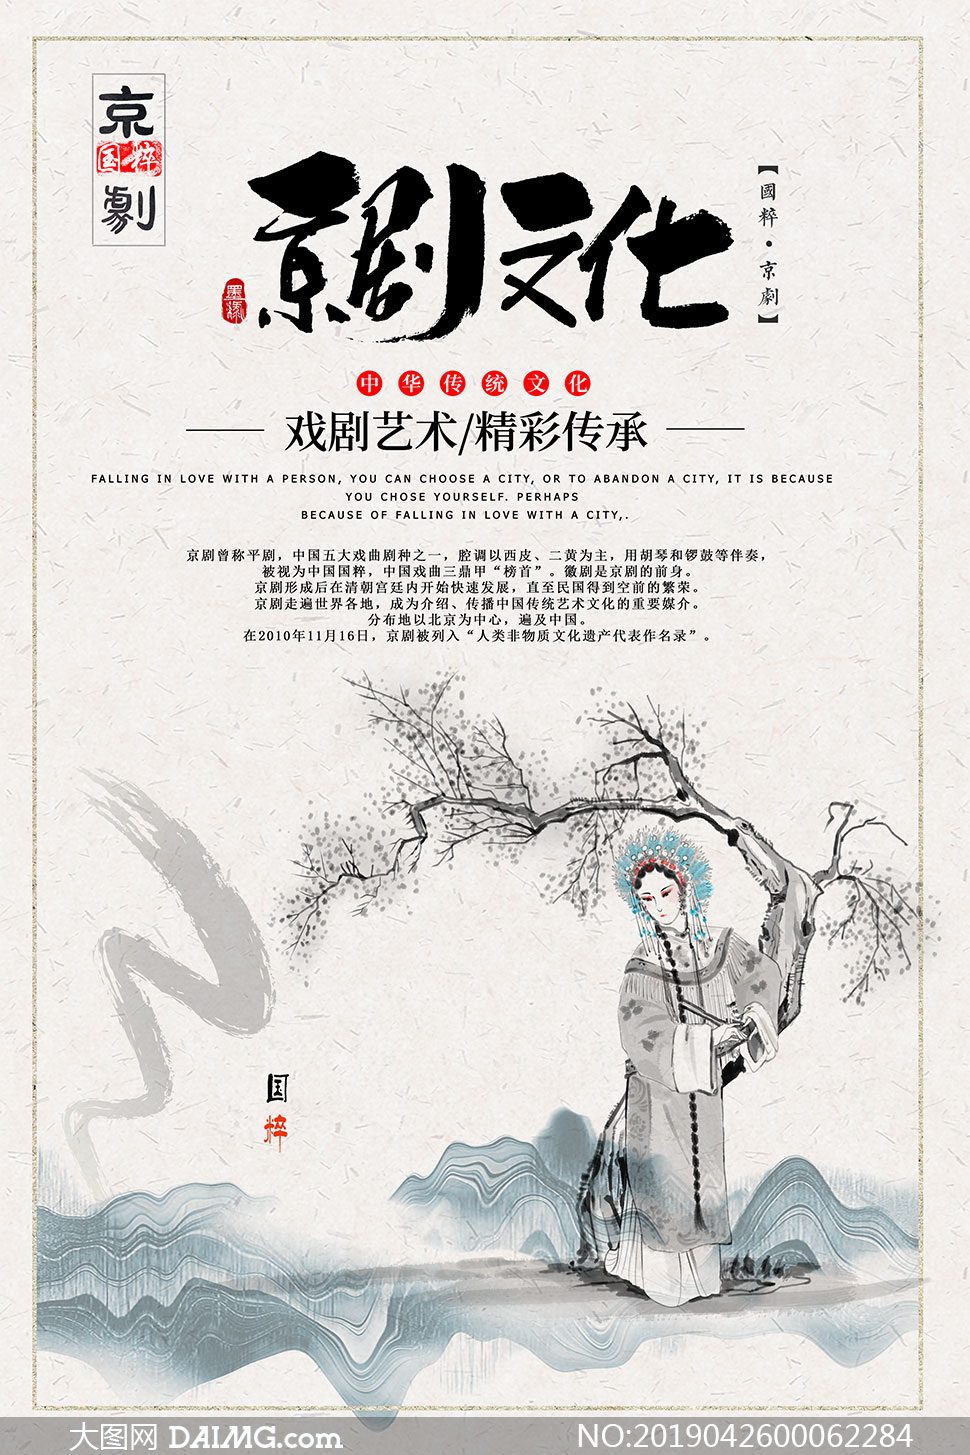 中国传统戏剧文化海报设计psd素材